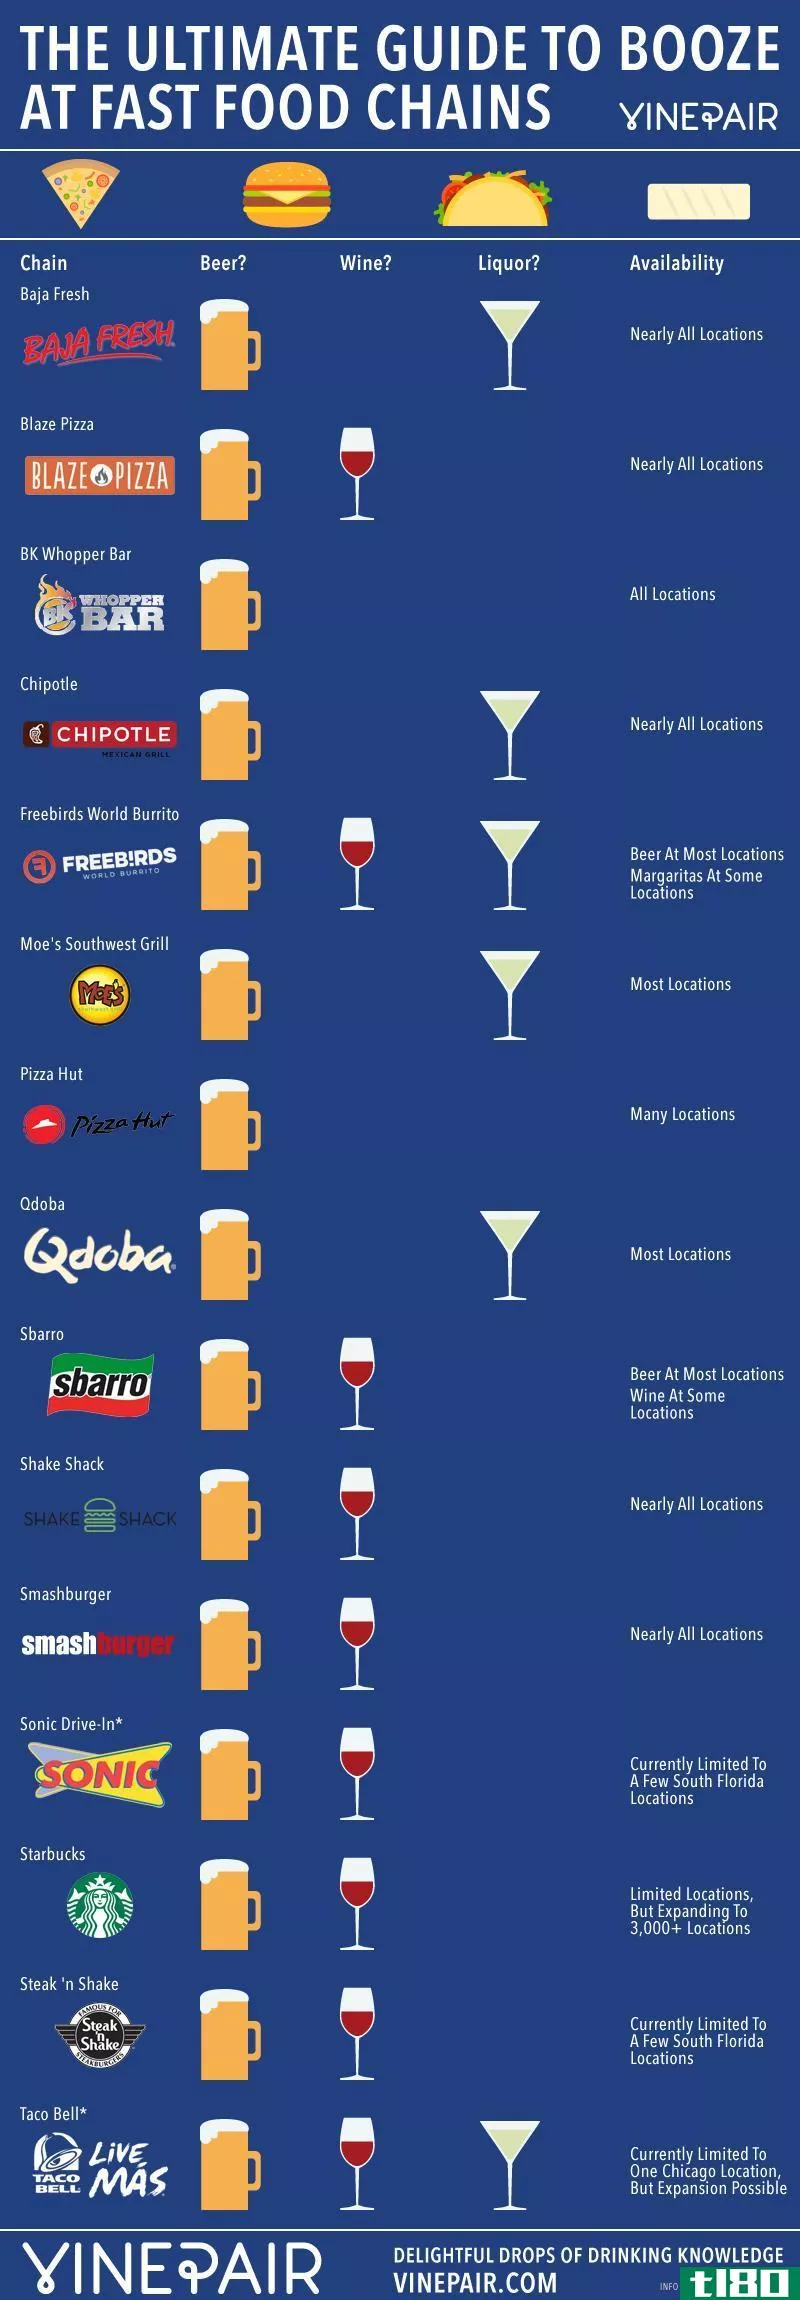 这张信息图显示了哪些快餐连锁店提供酒精饮料